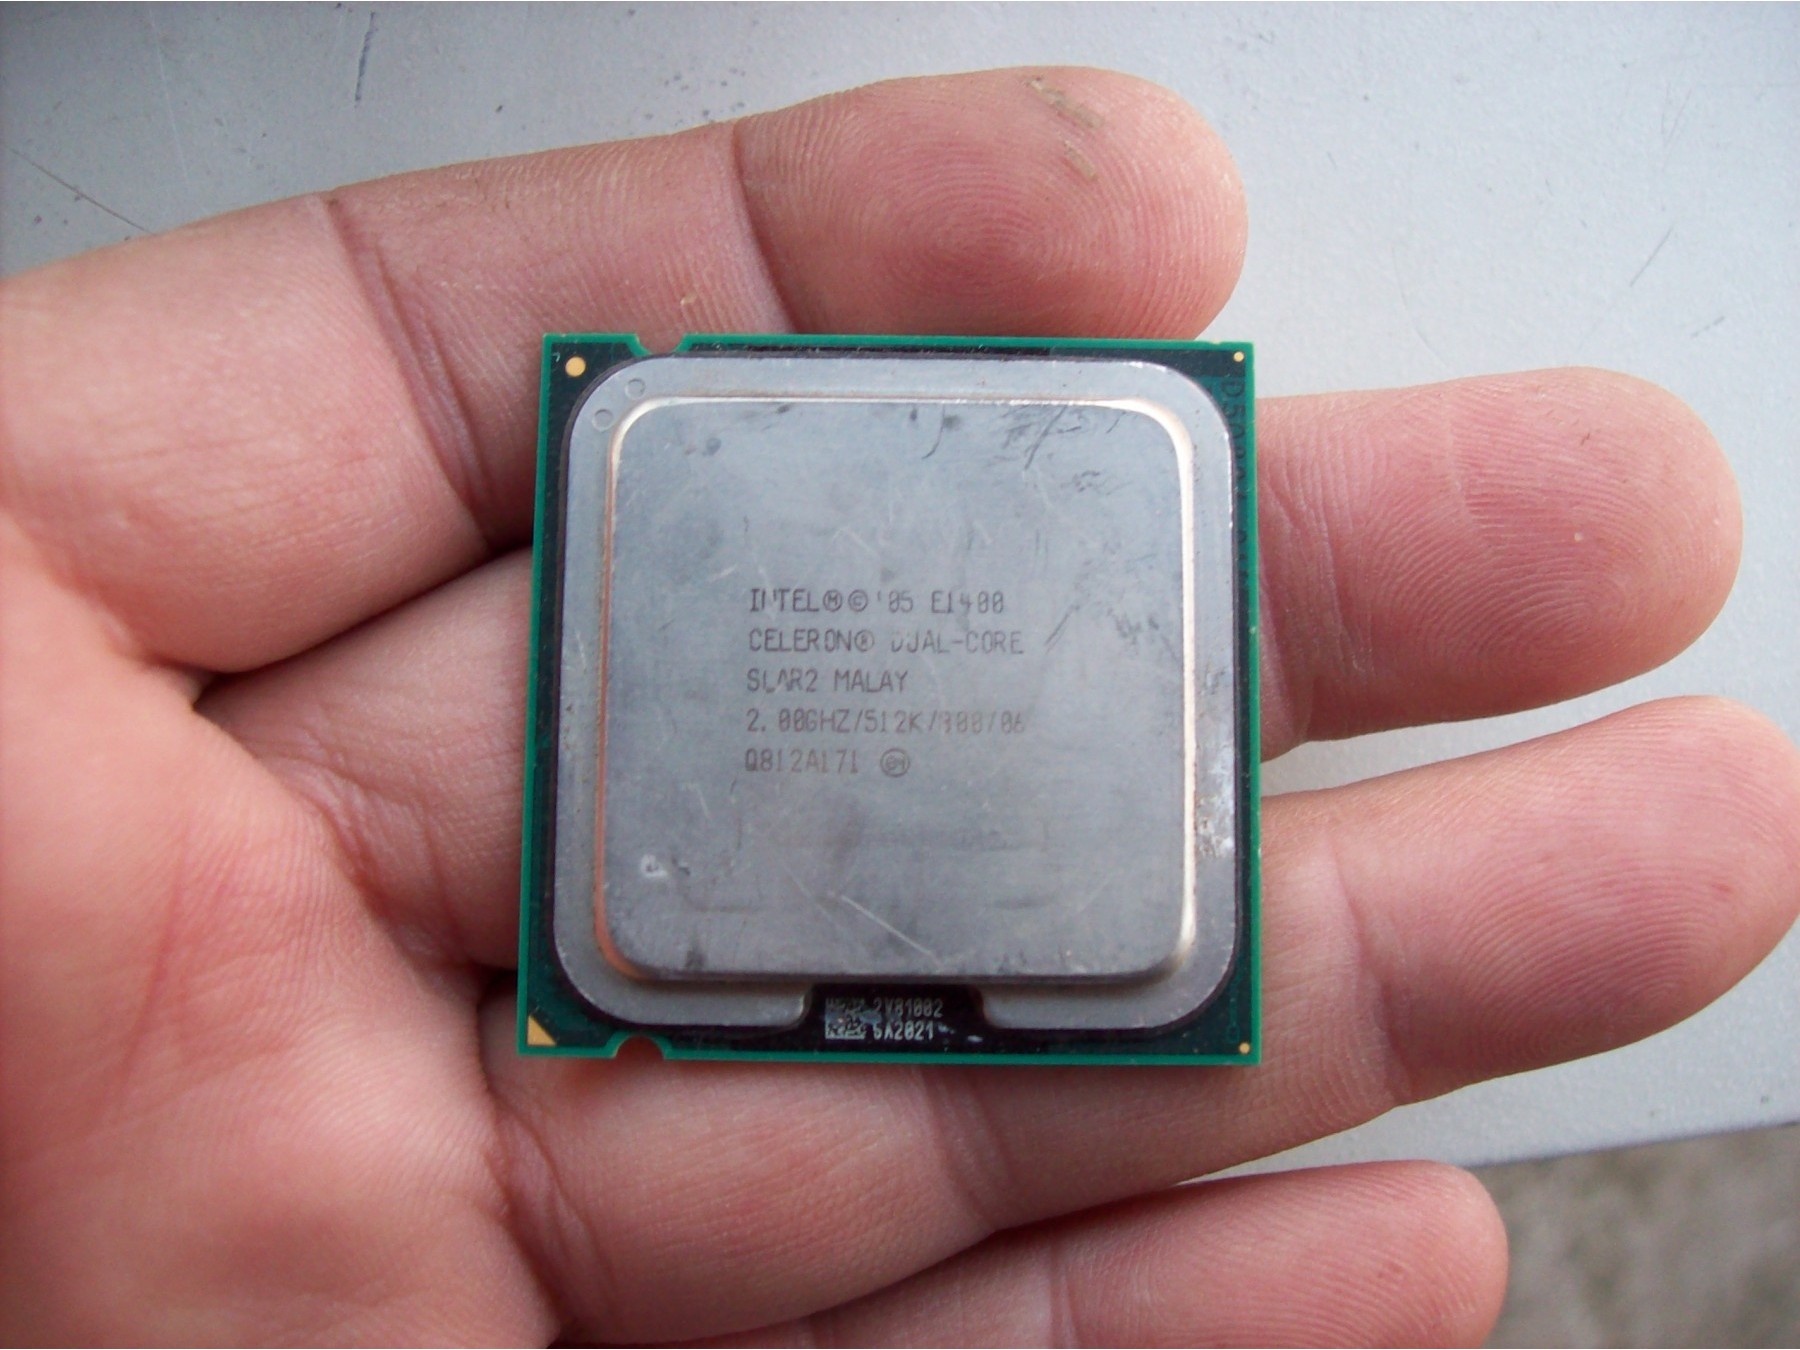 1400 процессор. Процессор Intel e1400 Celeron Dual-Core slar2 Malay. Celeron Dual Core e1400. Интел 0.2 Celeron Malay. Intel Celeron Dual Core e1400.